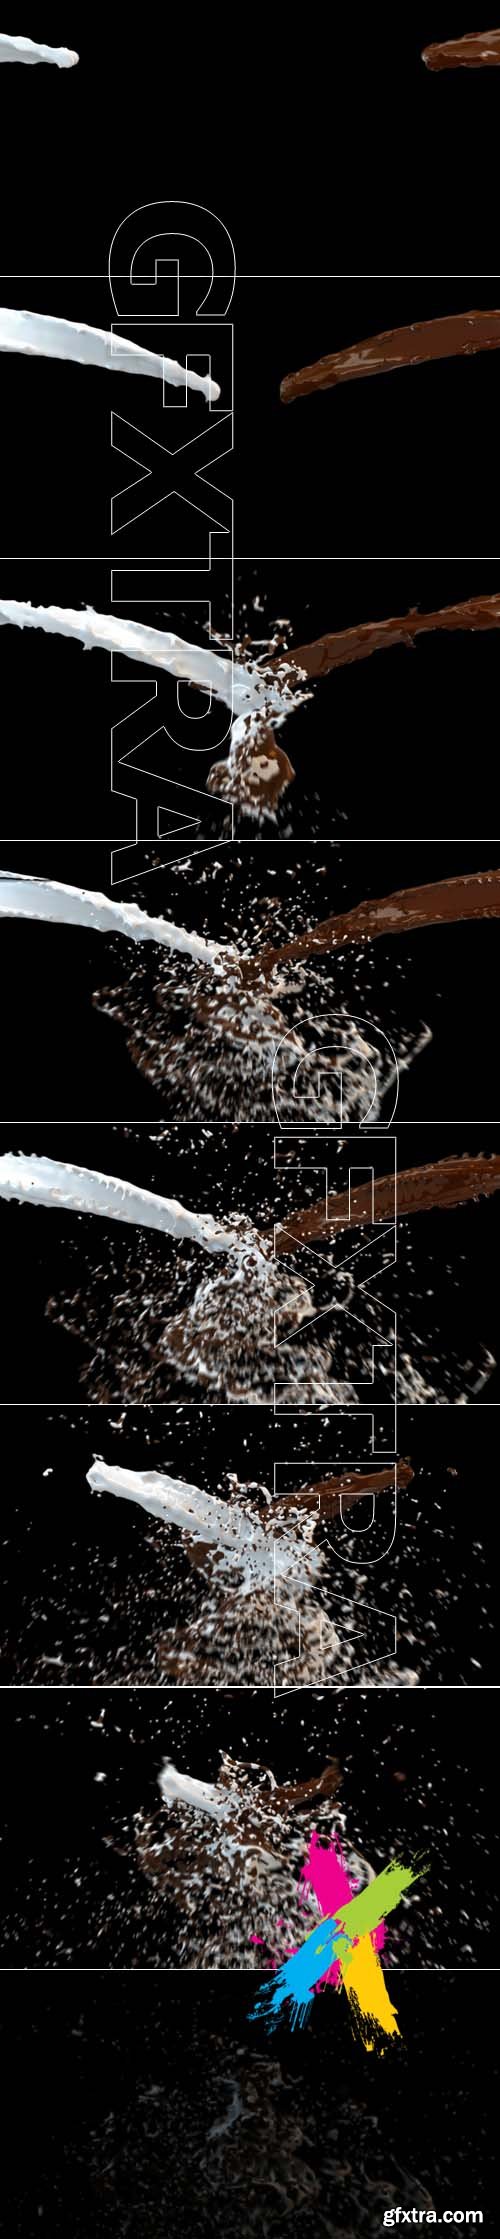 Milk and Chocolate Splash against black Footage